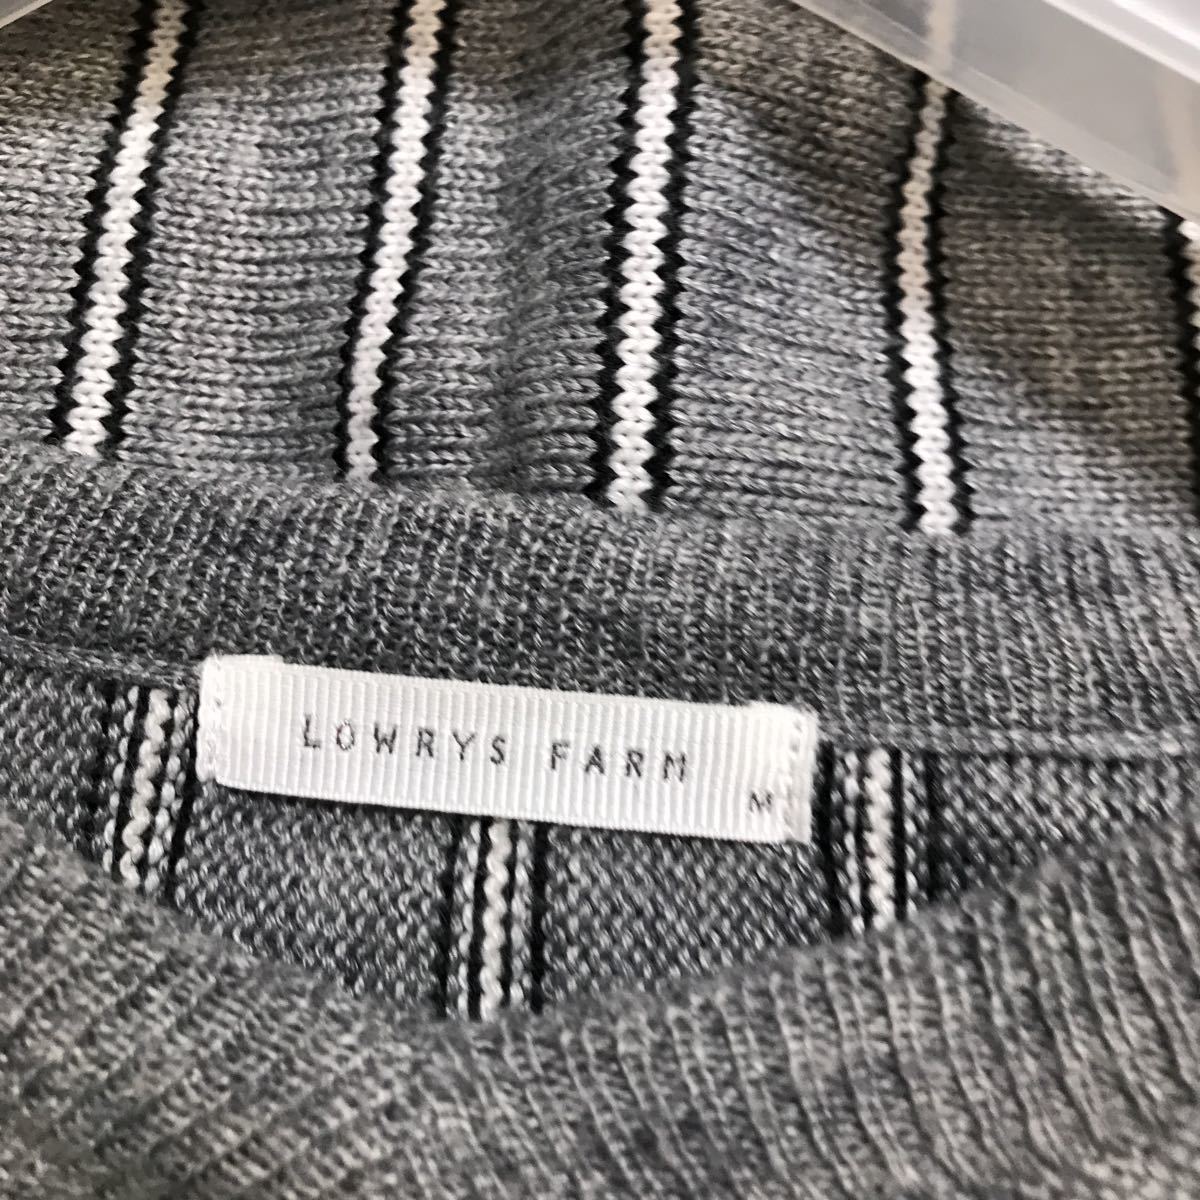 [ б/у ]LOWRYS FARM Lowrys Farm V шея свитер размер M